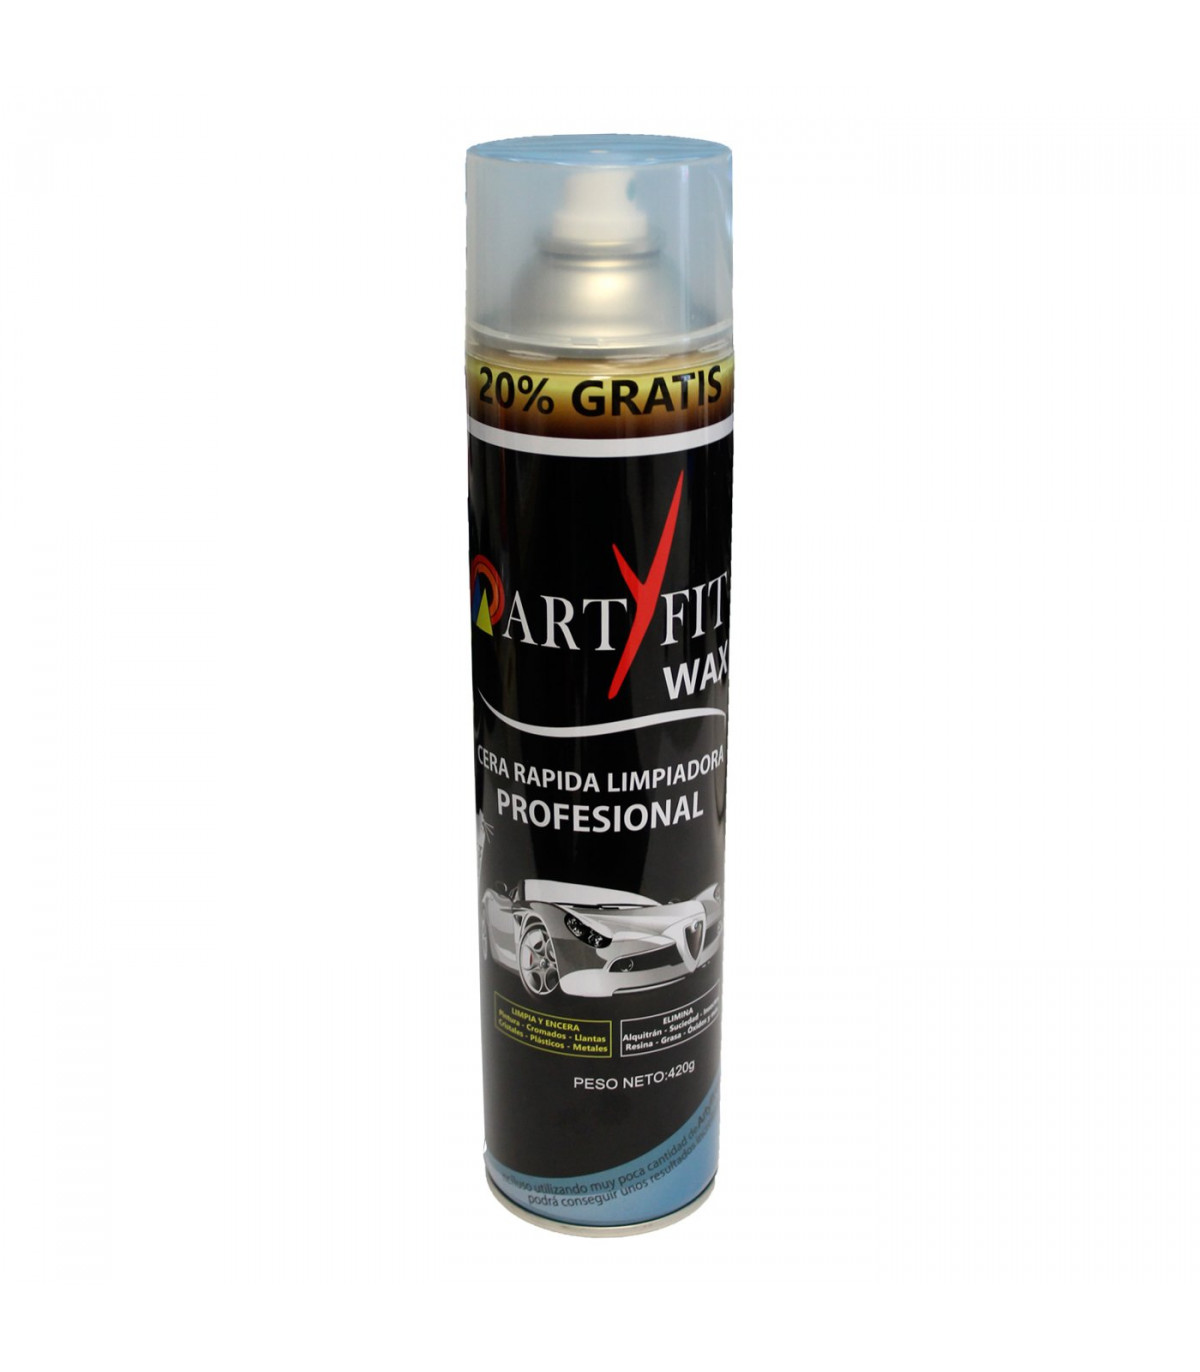 Artyfit - Cera limpiadora de coche en seco, limpieza sin agua, rápida y  profesional de carrocería de vehículos, abrillantador, 6